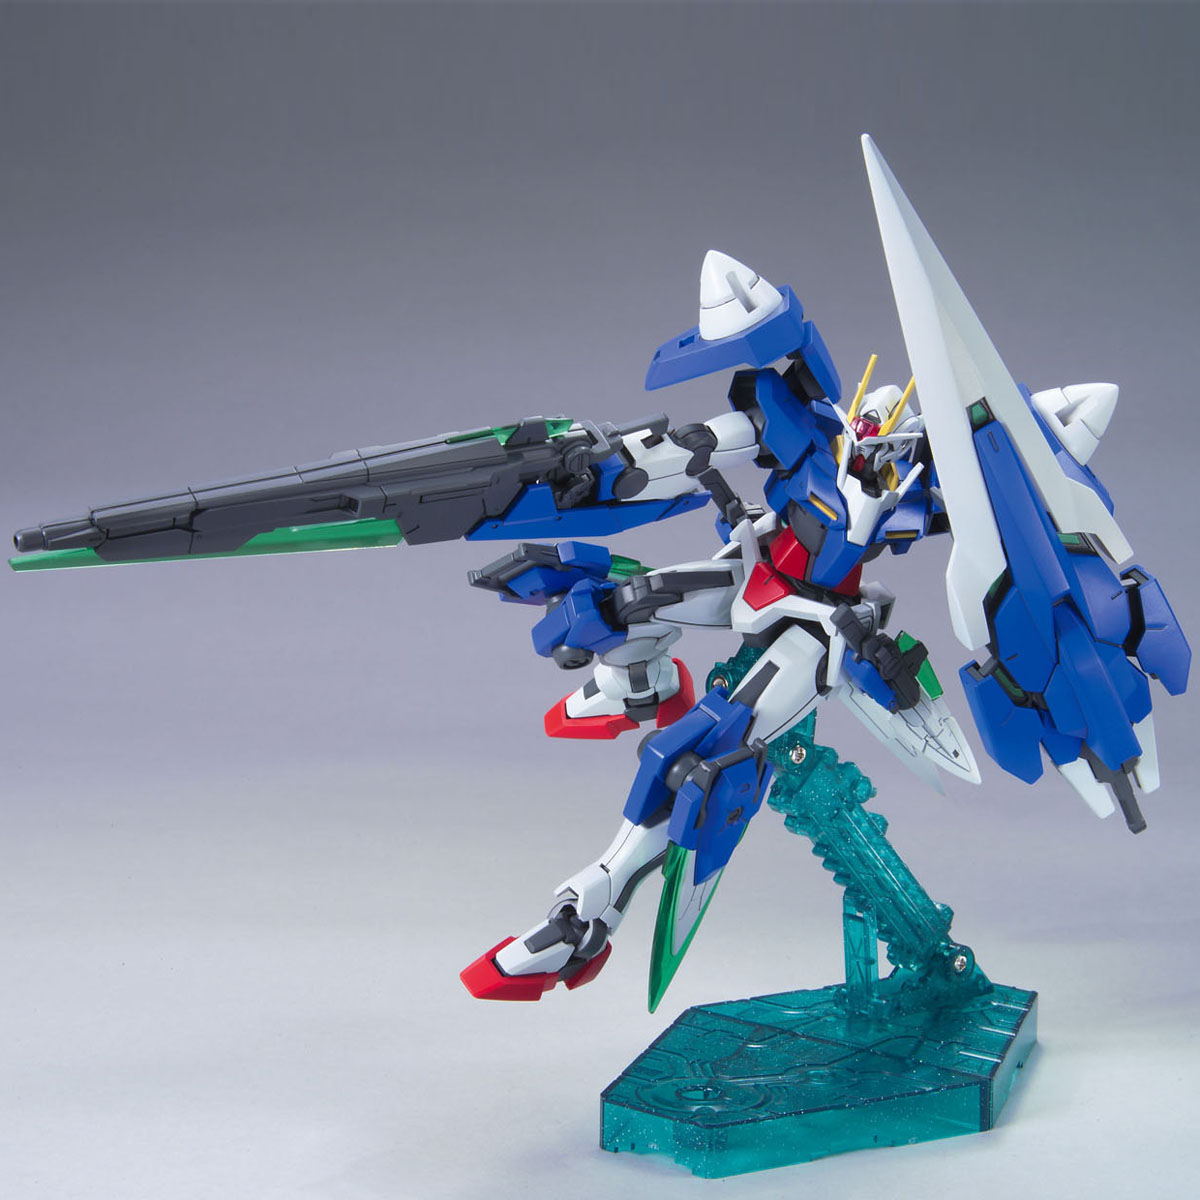 HG 1/144  00 Gundam Seven Sword/G